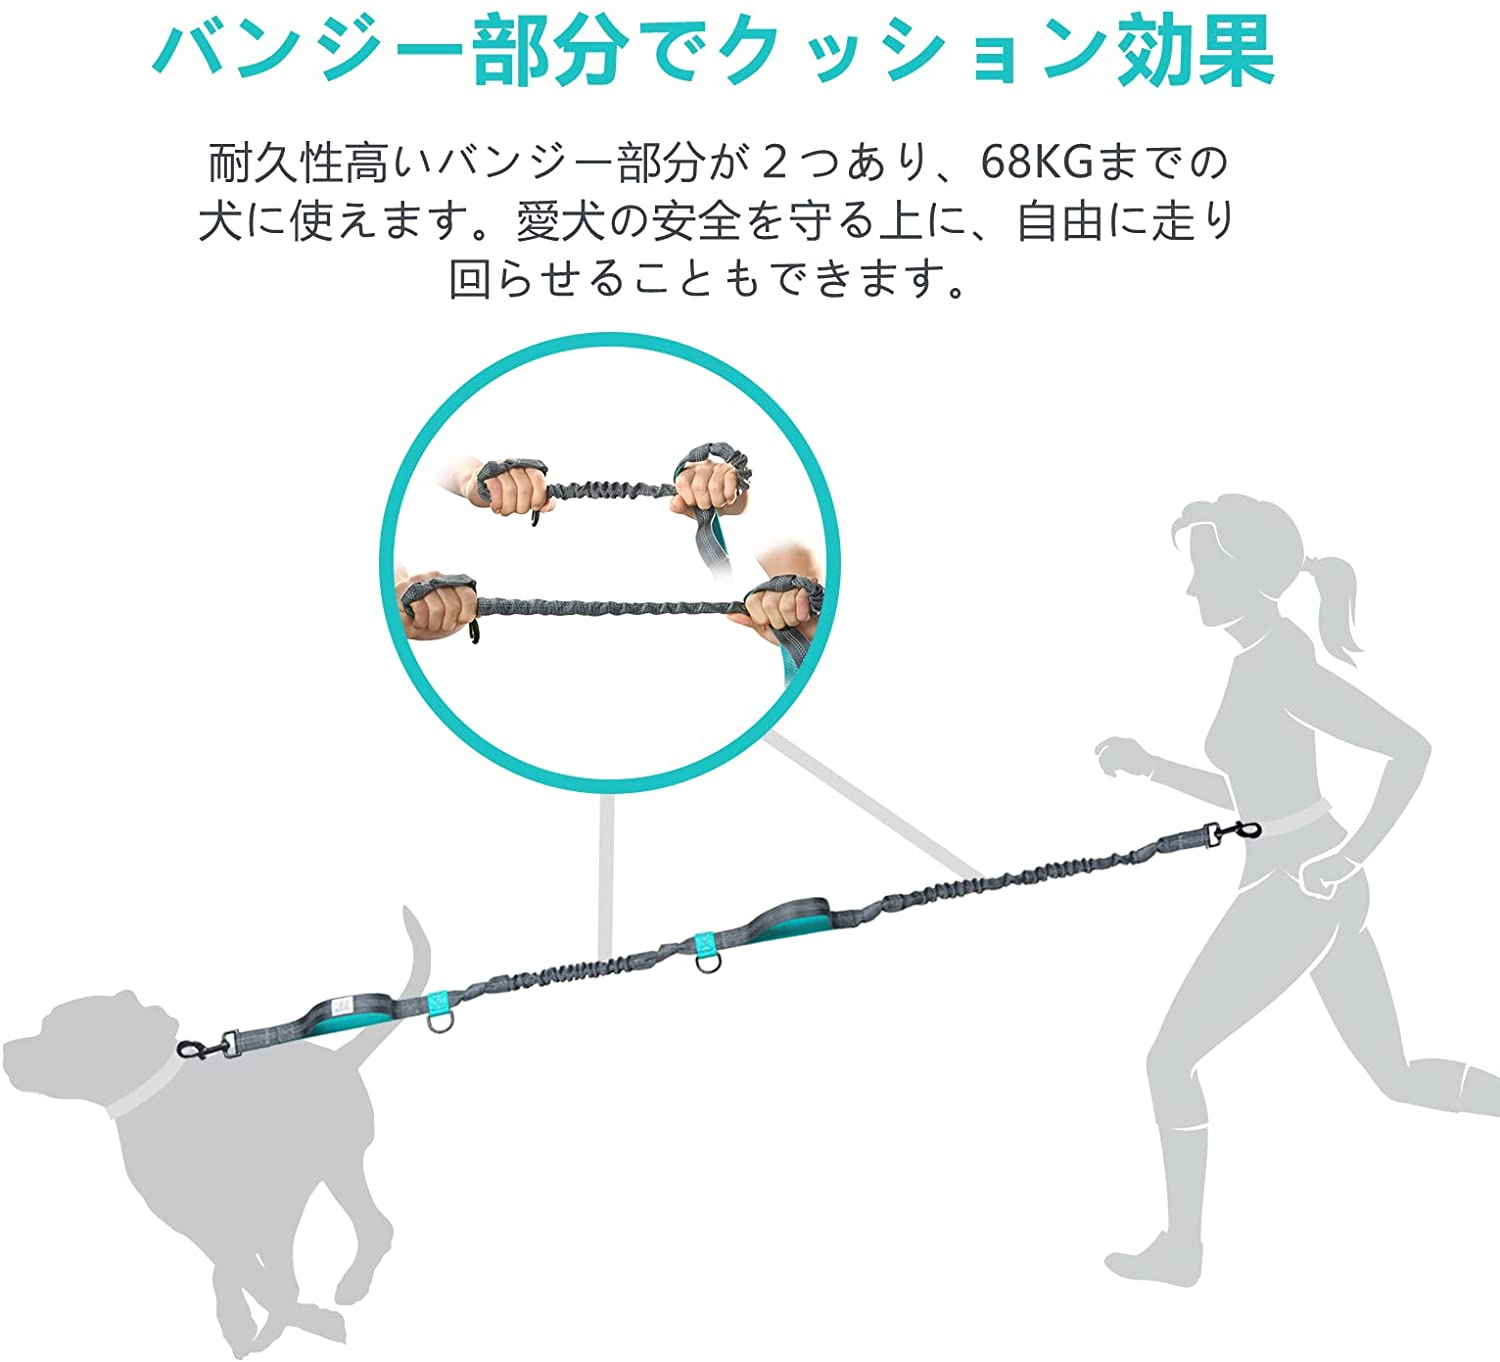 PETBABA(ペットババ) 犬 リード ハンズフリーリードセット ウエストリード 腰ベルト 伸縮 調節可能 反射素材 ジョギング ランニング 訓練